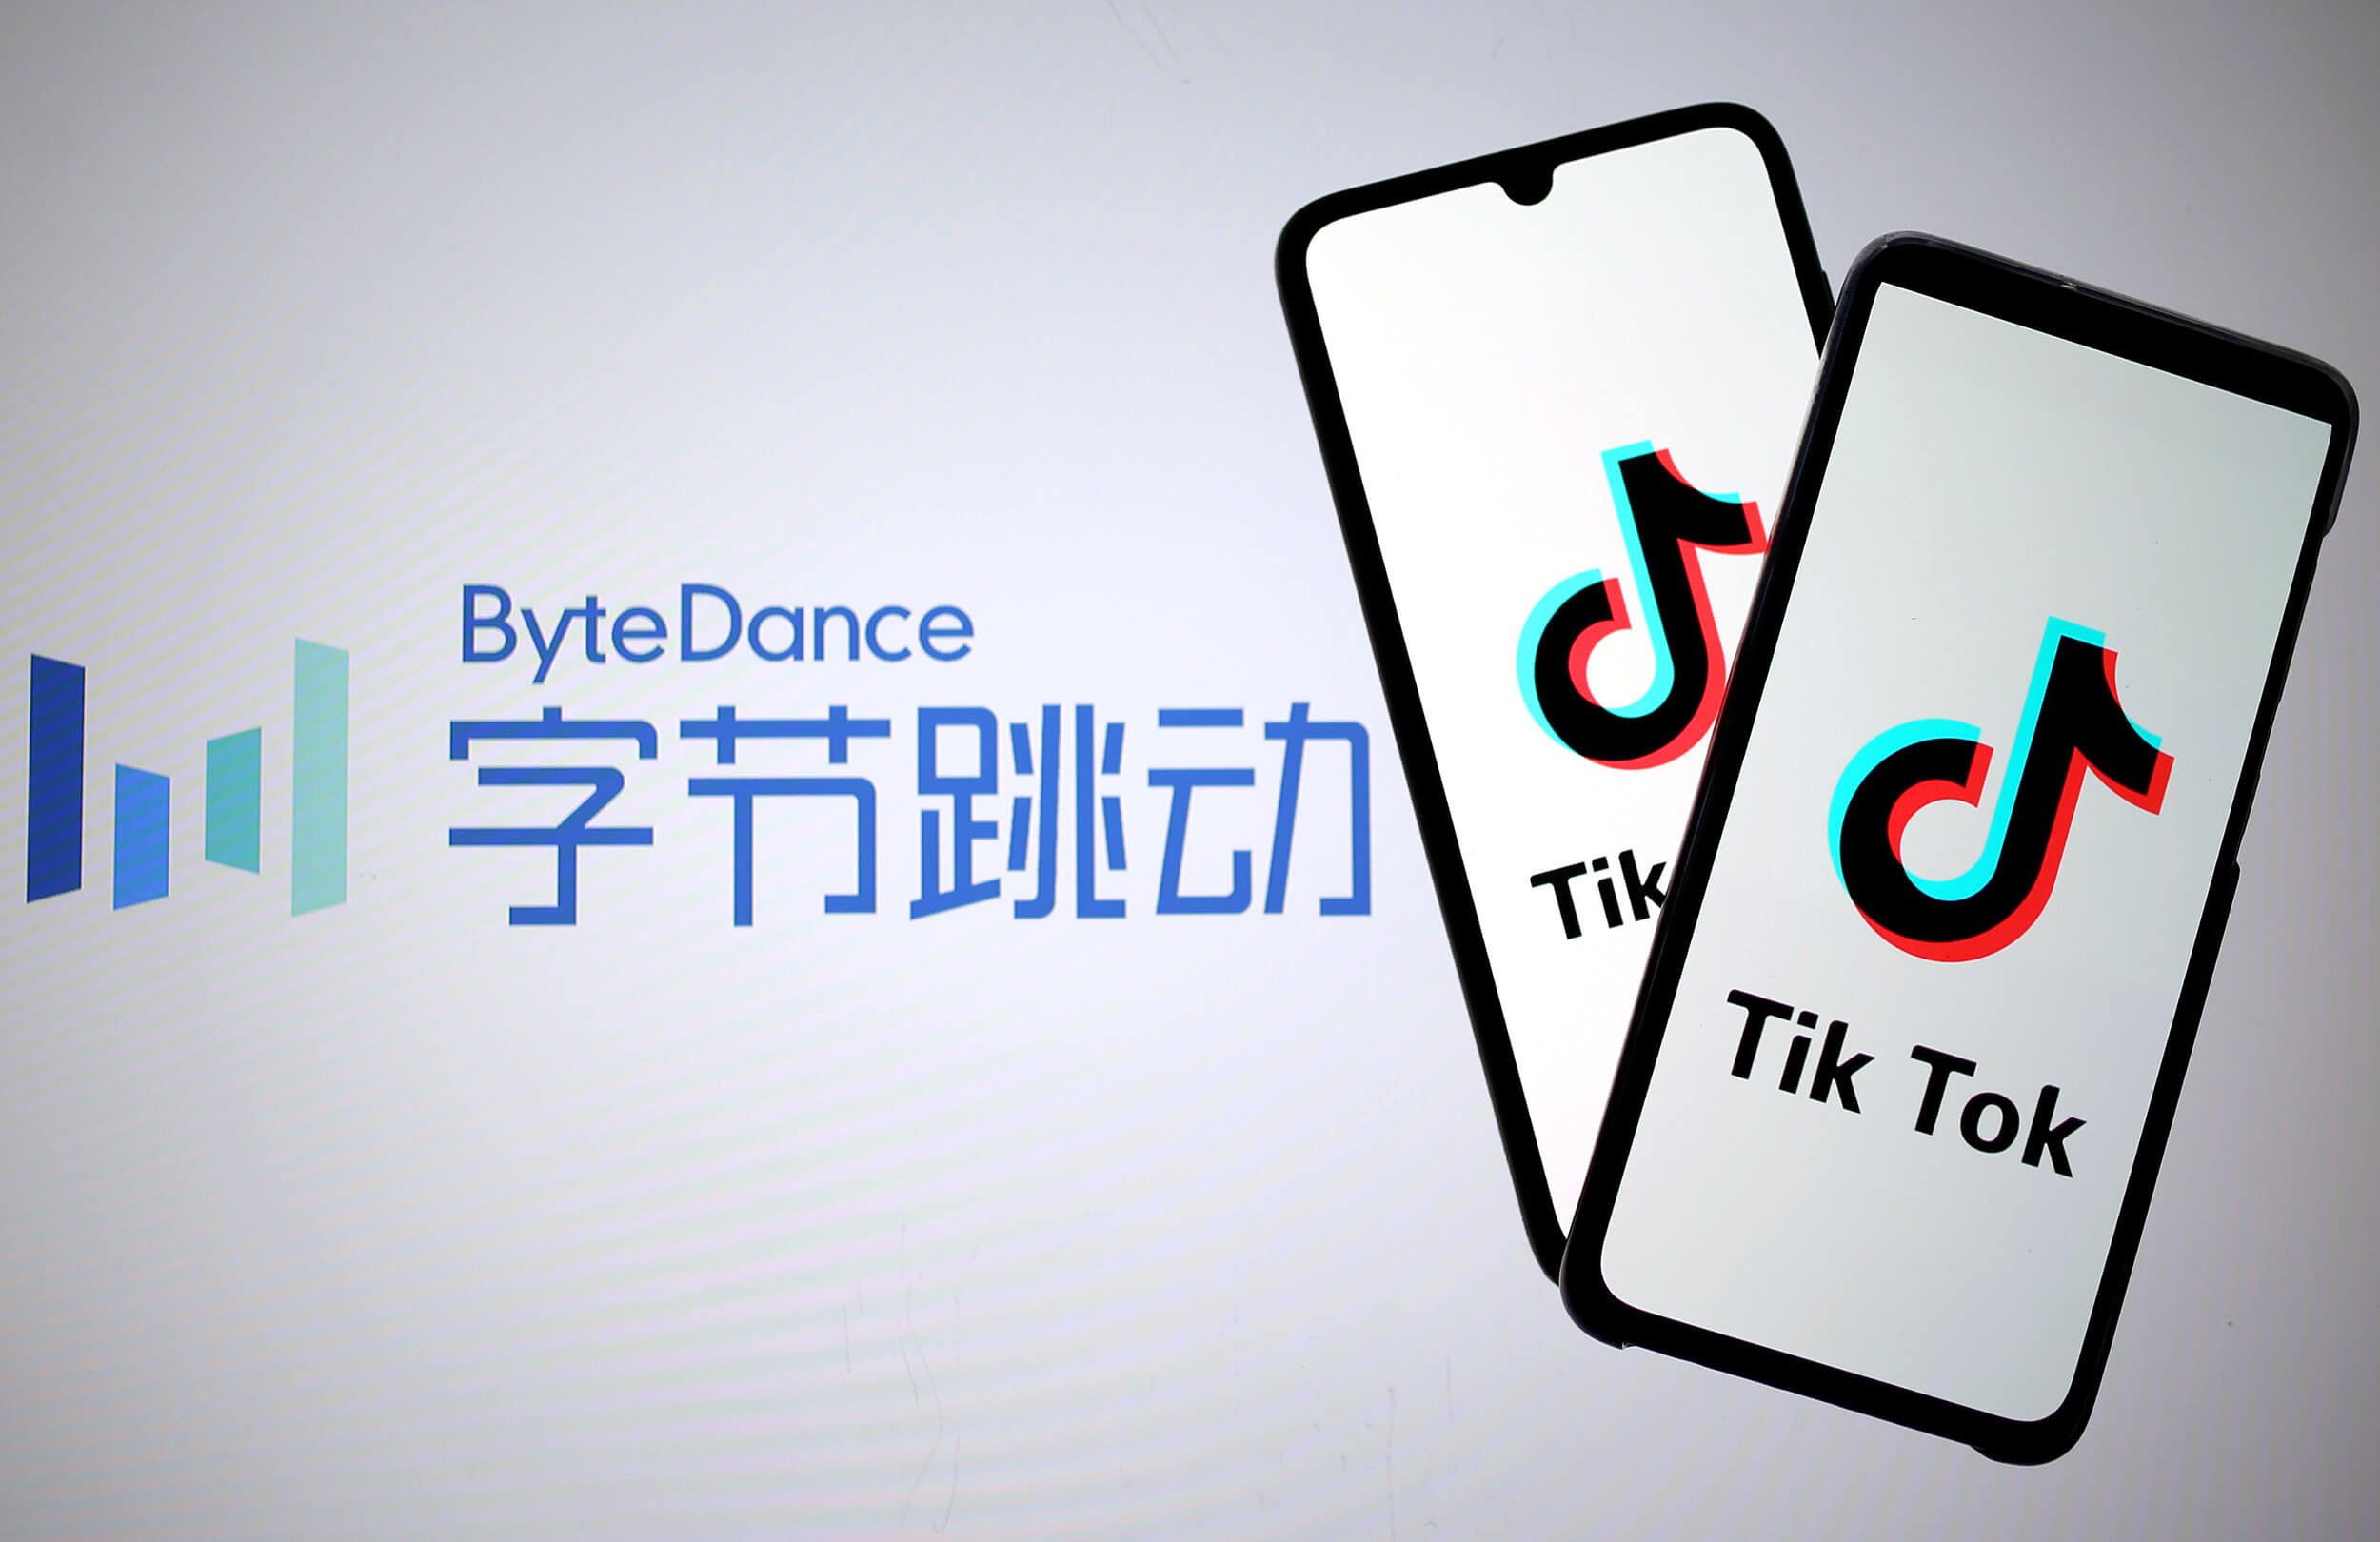 ByteDance เจ้าของ TikTok พร้อมท้าชนเจ้าตลาดอีคอมเมิร์ซอย่าง Amazon